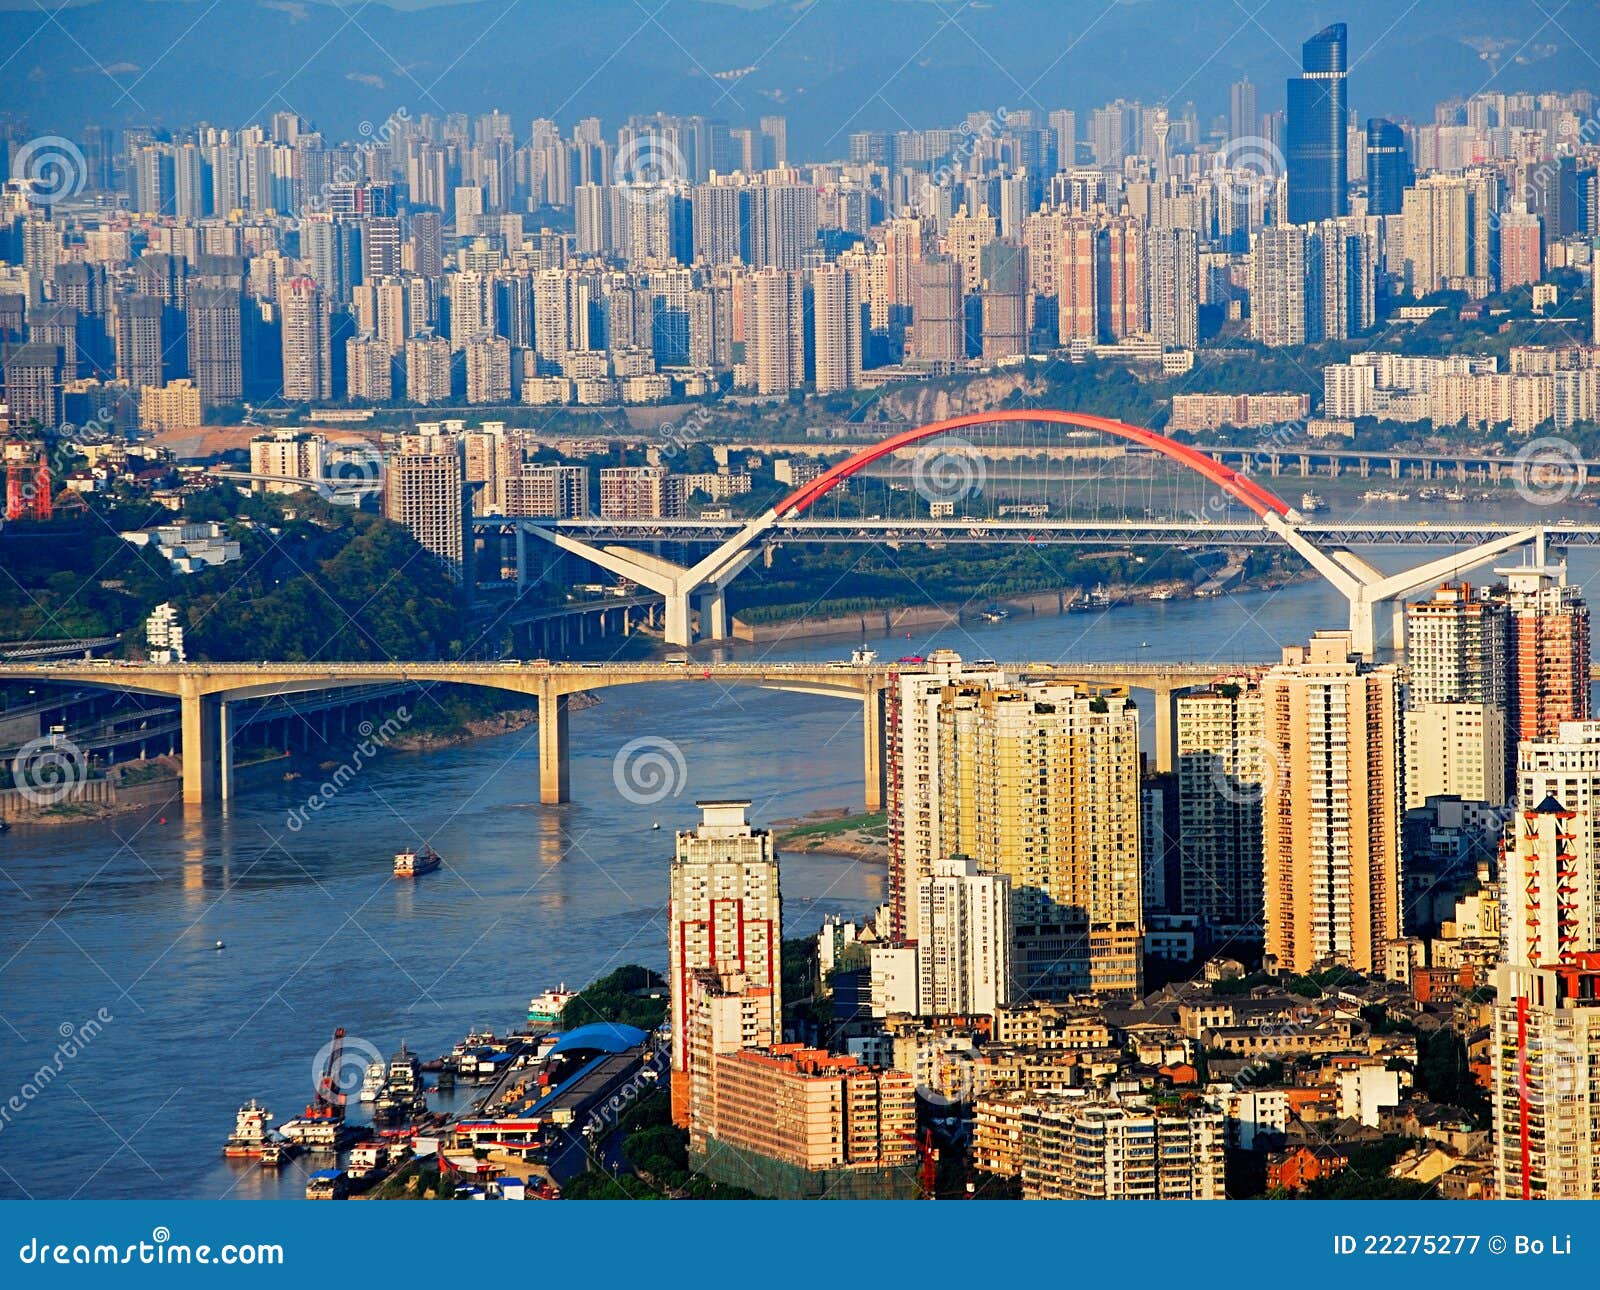 chongqing city